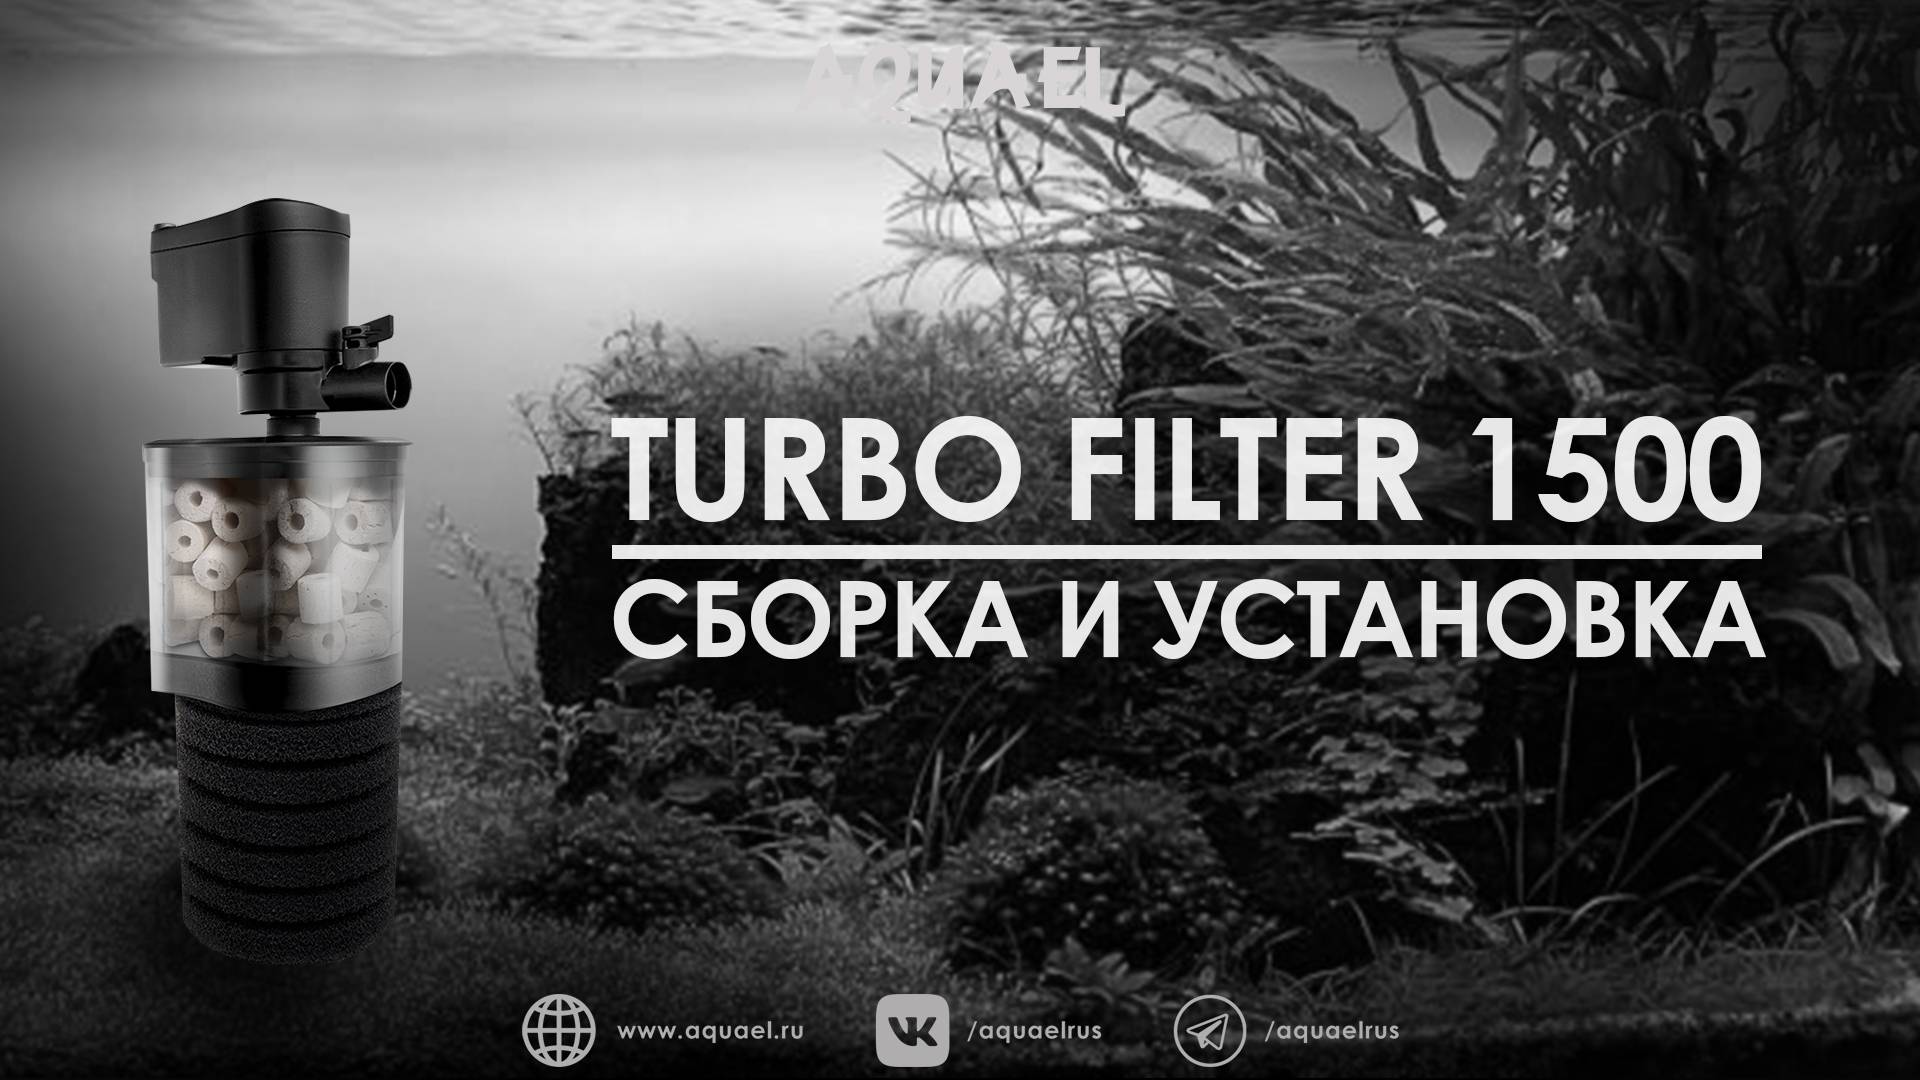 Сборка, установка и аксессуары для TURBO FILTER 1500